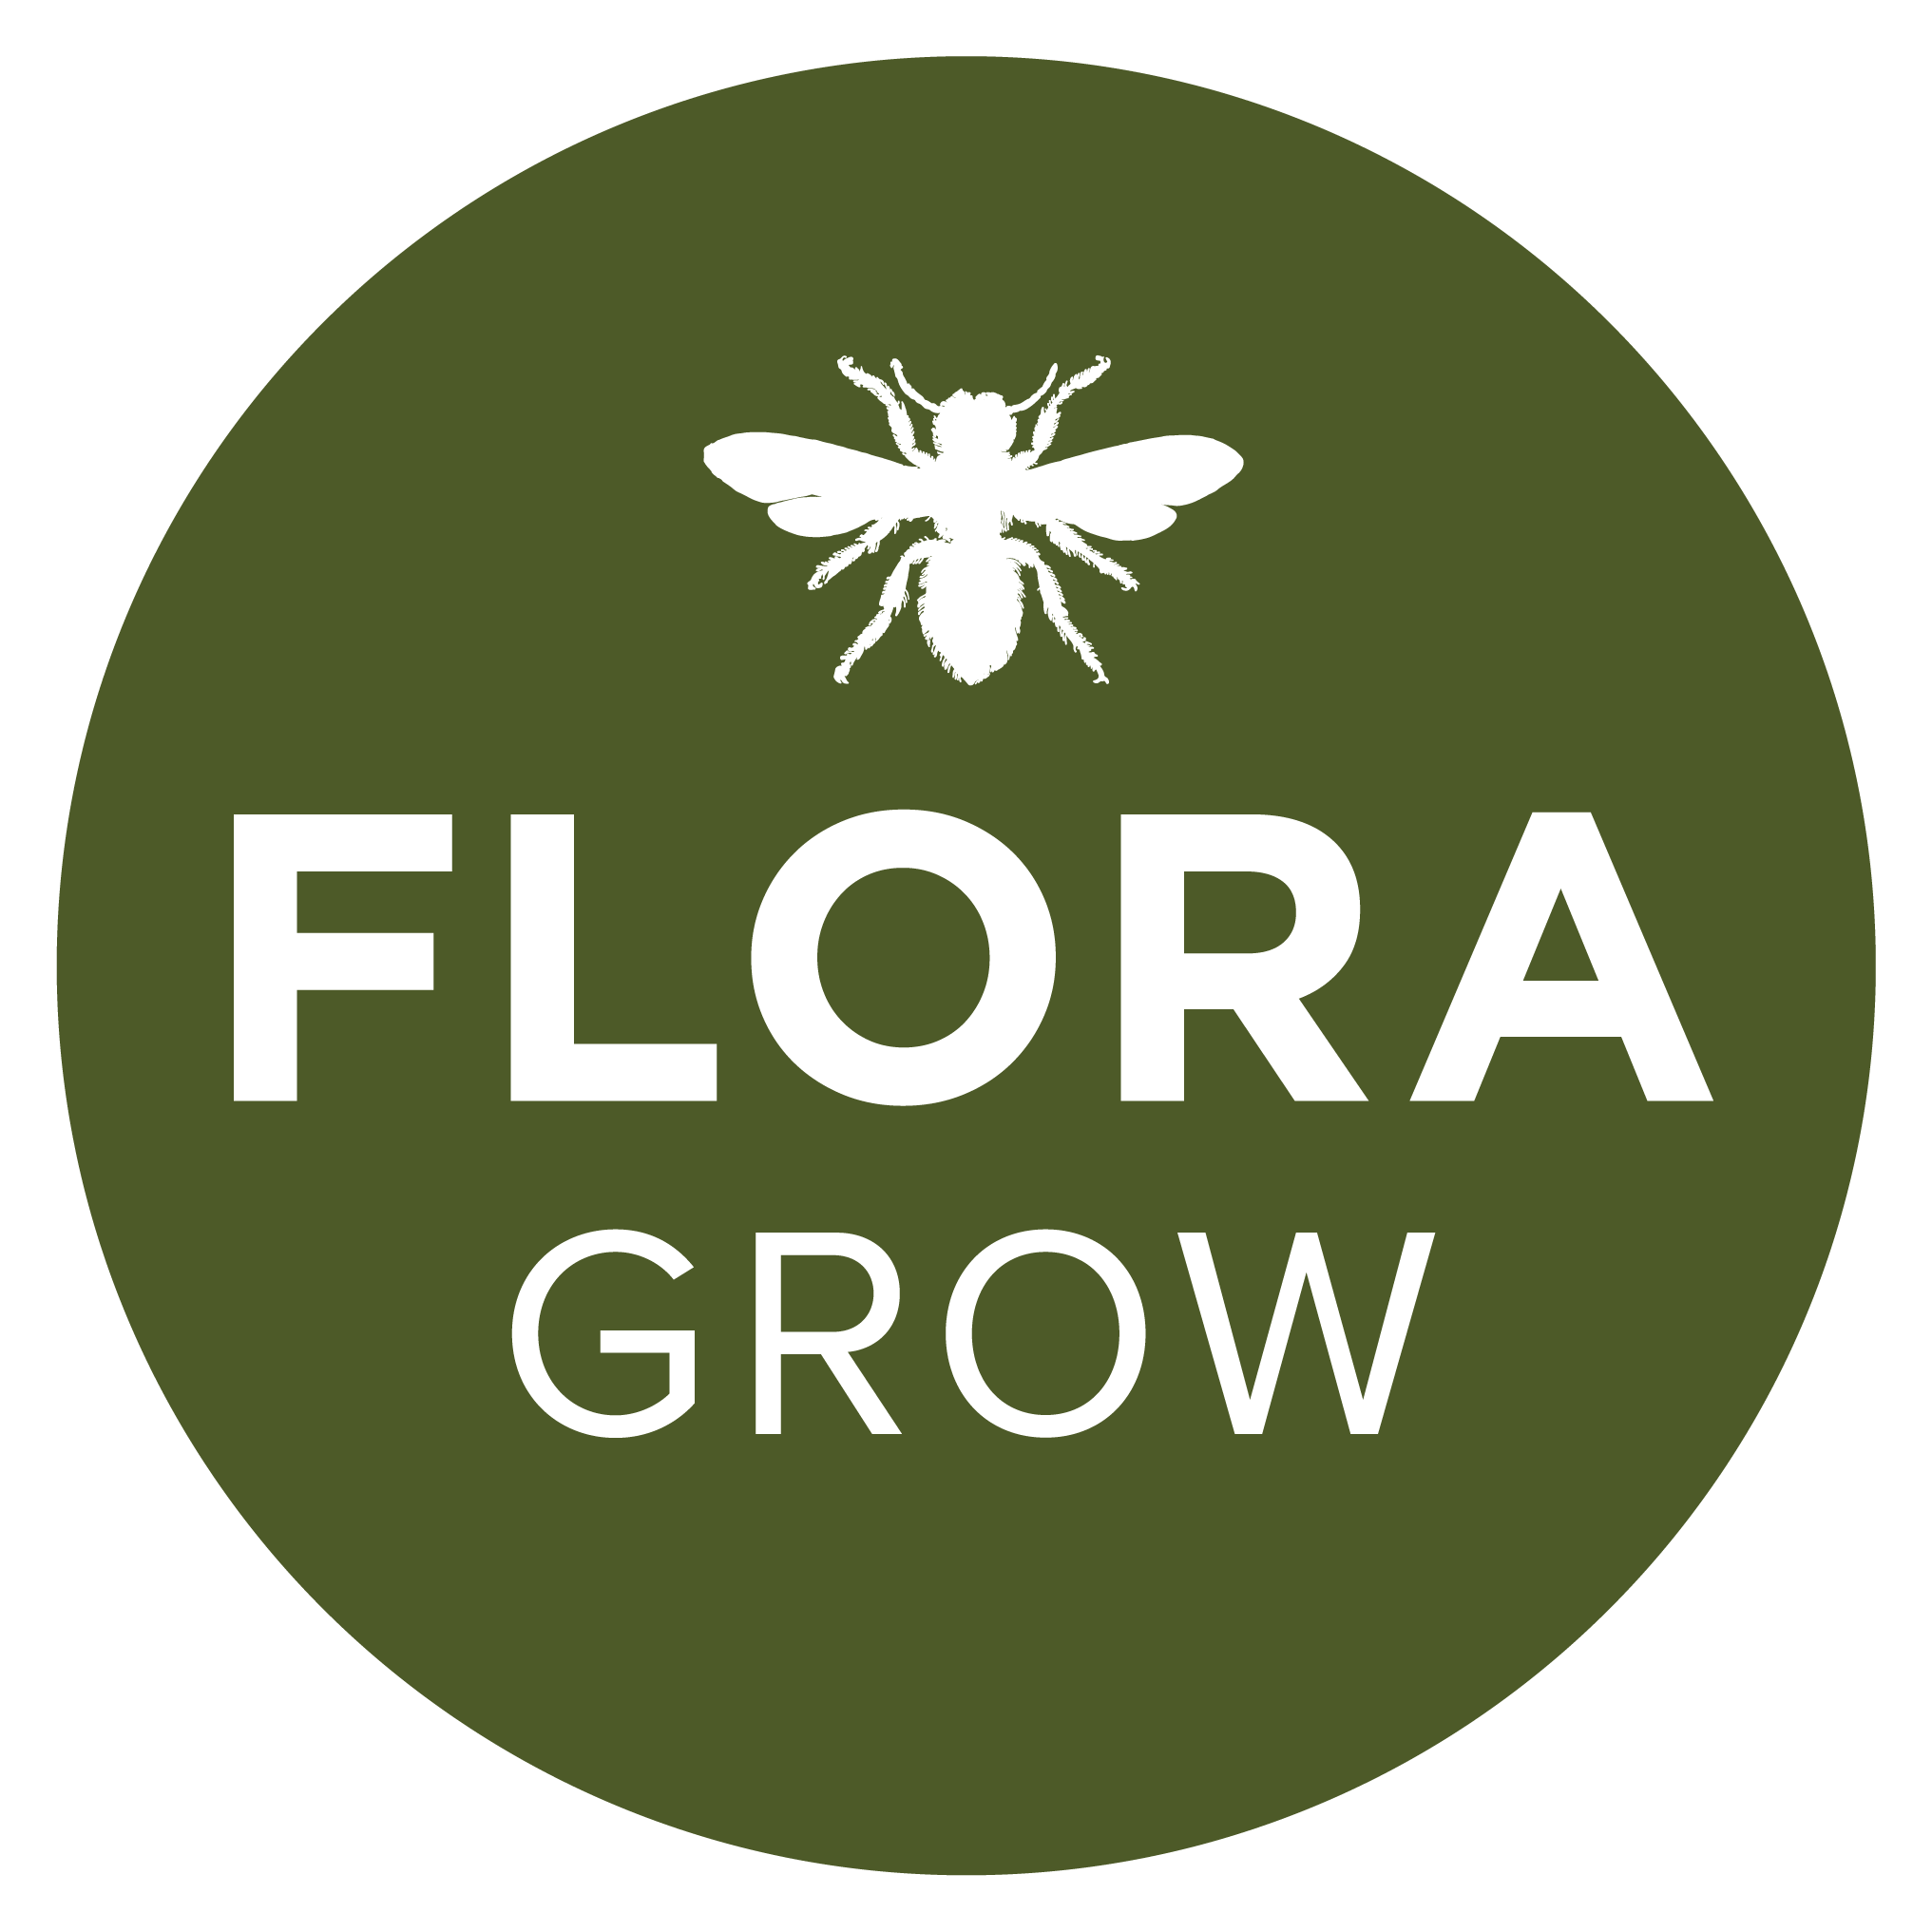 FLORA GROW